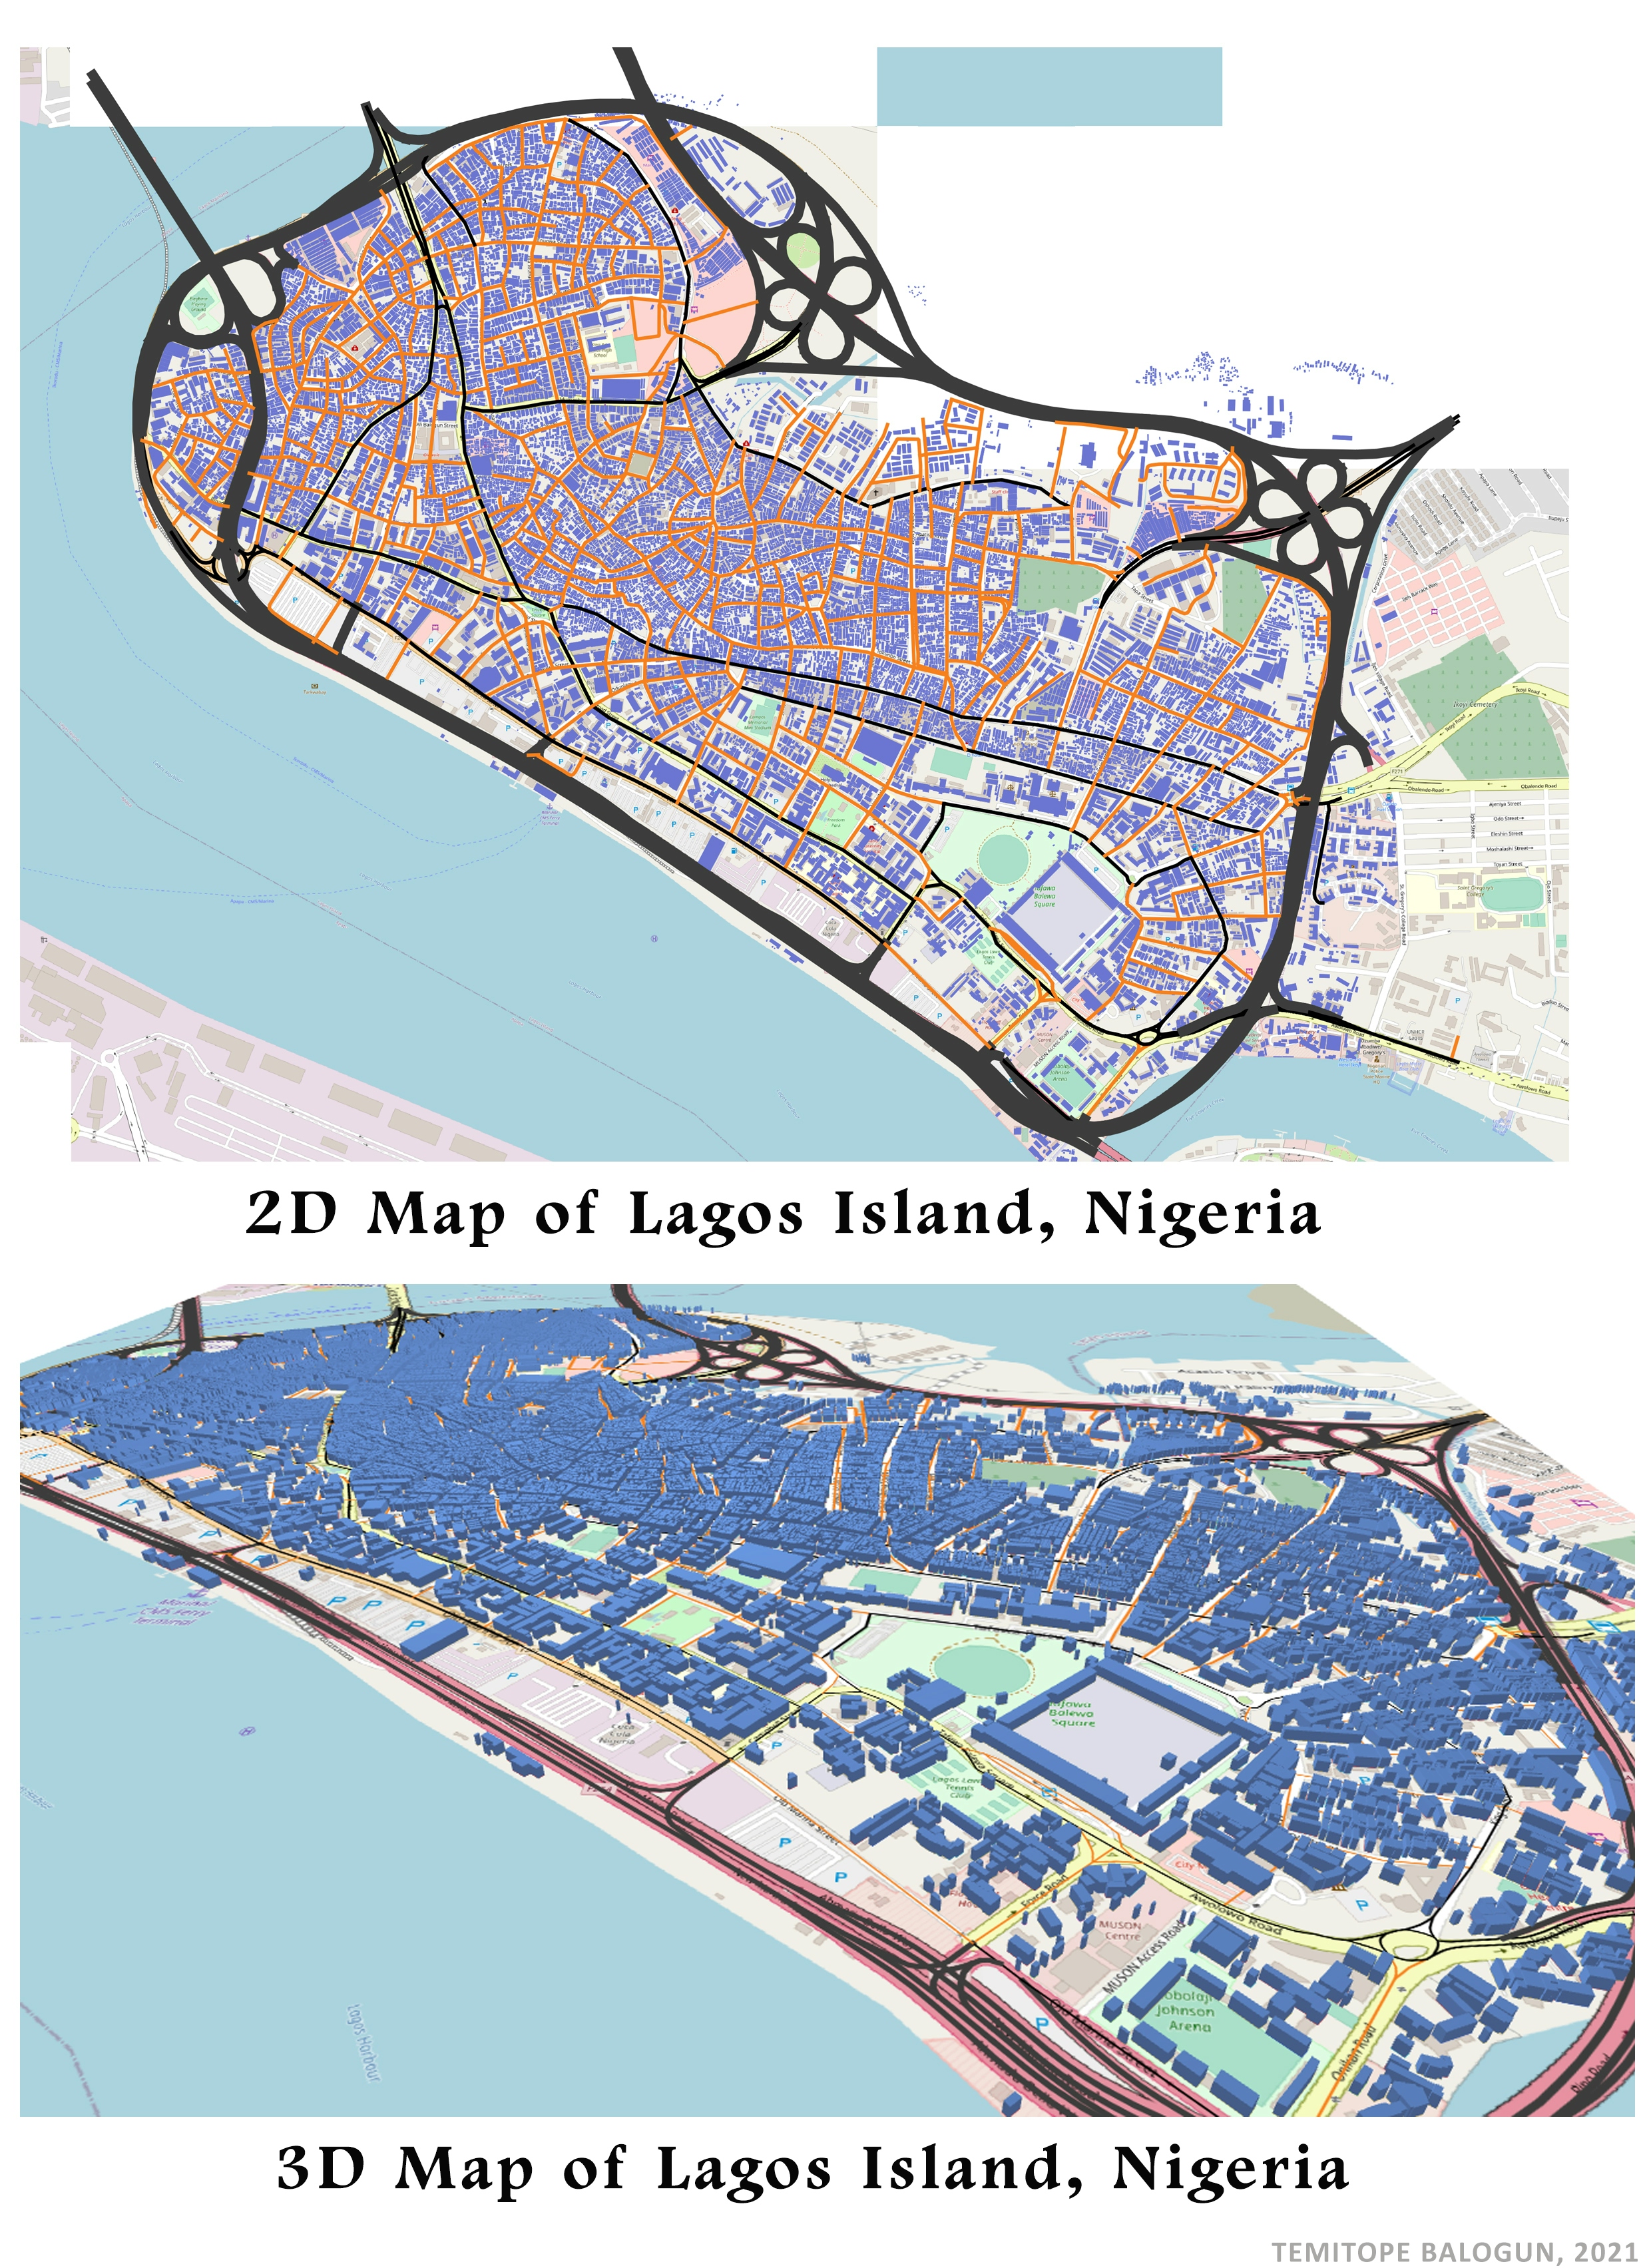 2D/3D map of Lagos Island, Nigeria